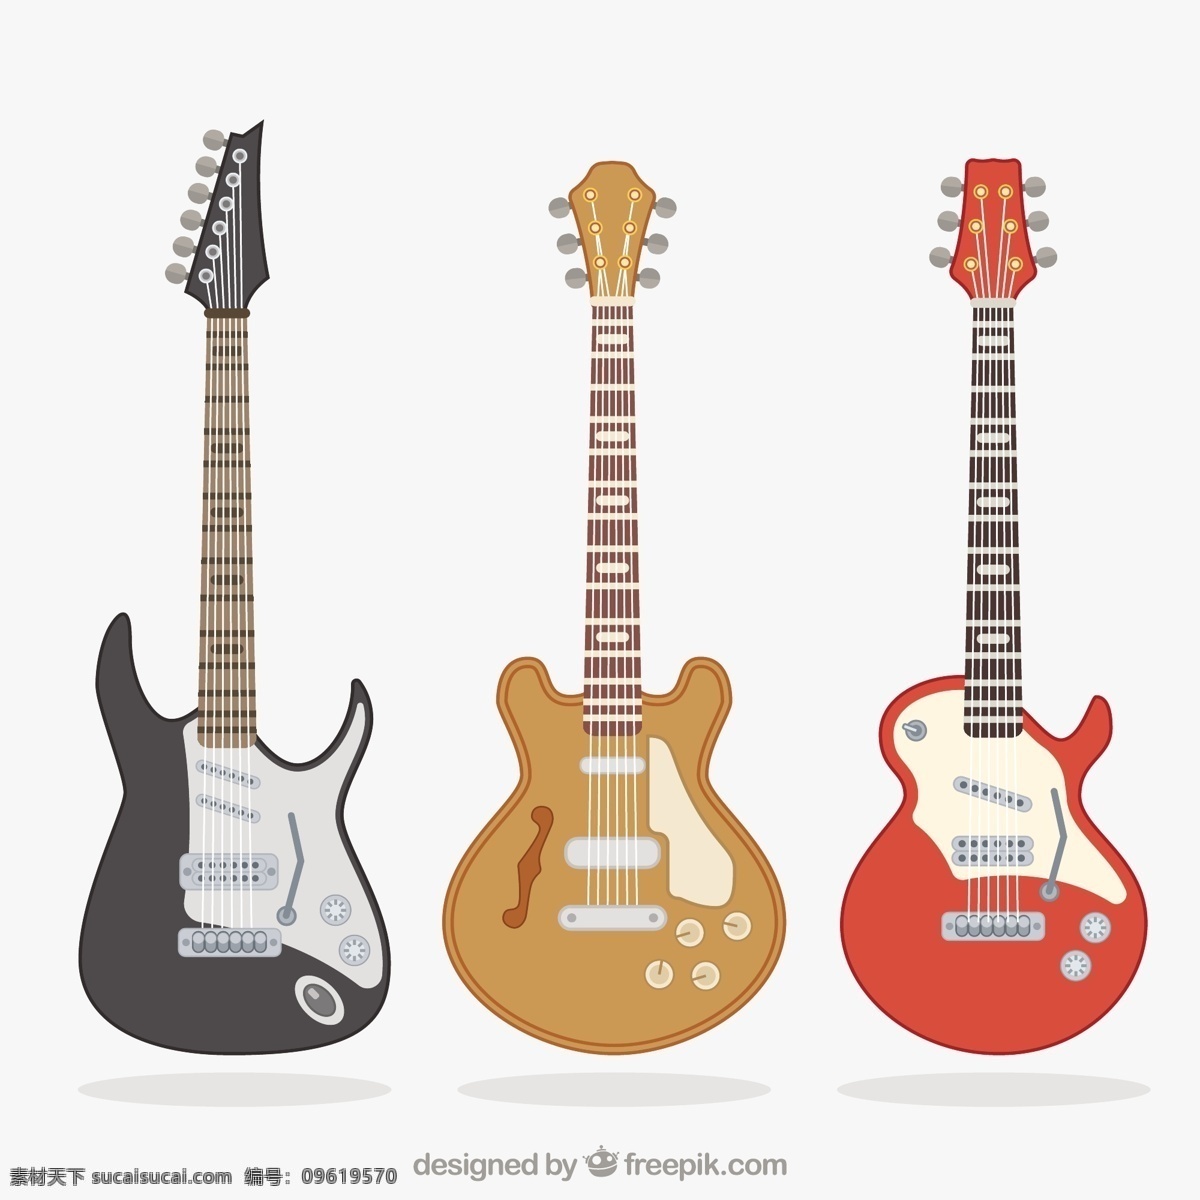 电吉他的品种 音乐 色彩 吉他 平板 摇滚 平面设计 音响 音乐会 演奏 电子 乐器 歌曲 摇滚乐 曲调 多样性